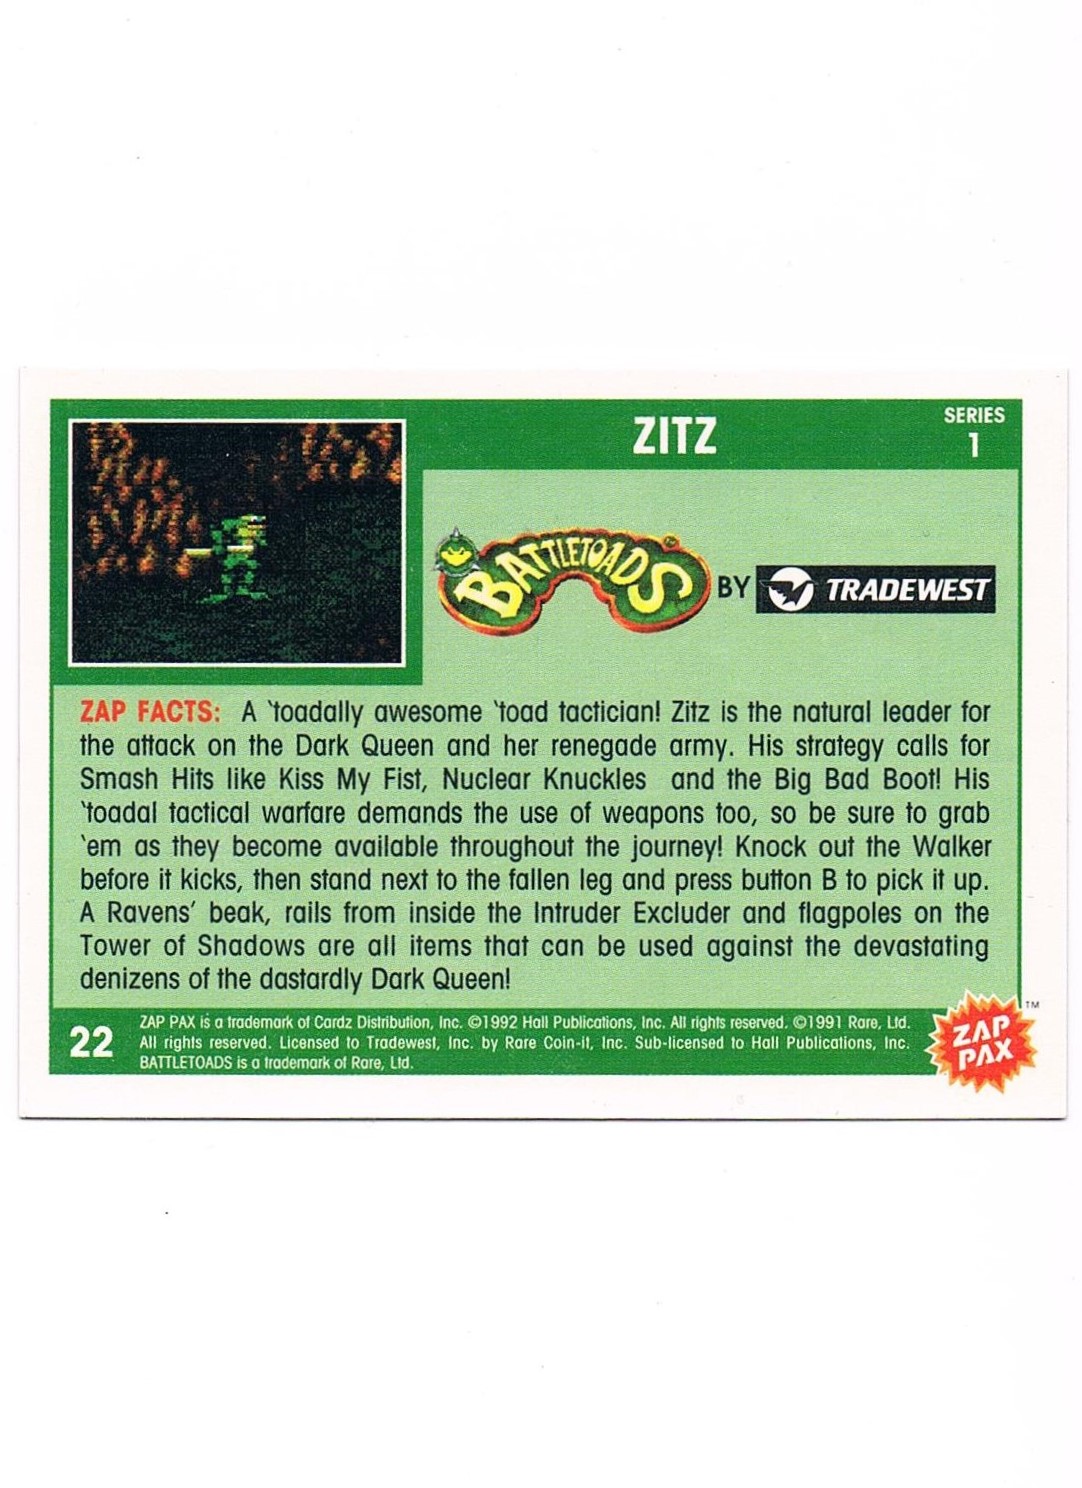 Zap Pax No. 22 - Battletoads Zitz 2